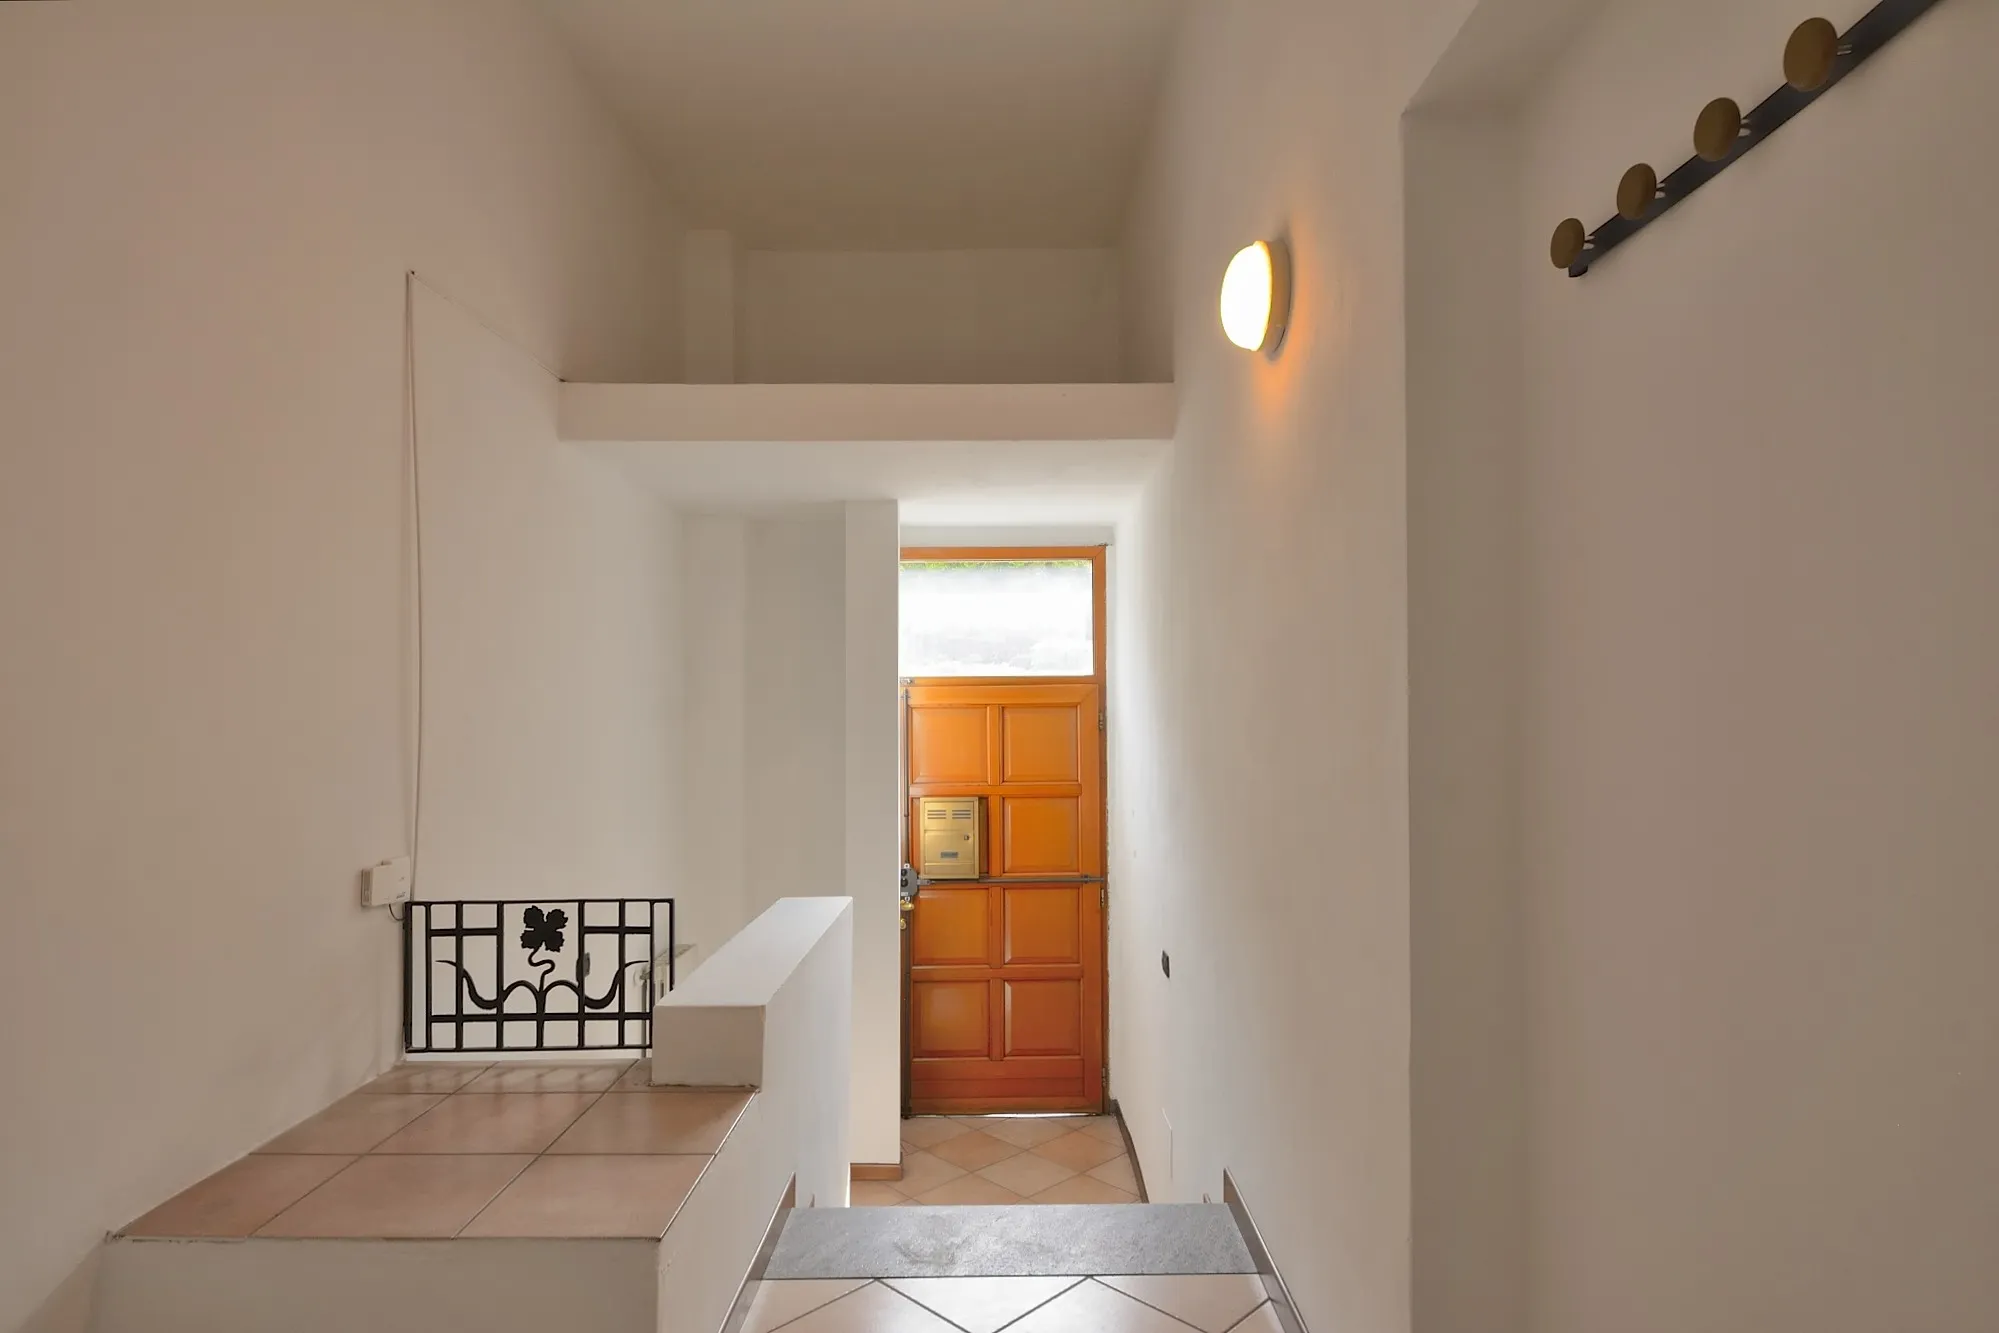 Affitto appartamento via Frescobaldi - immagine 6